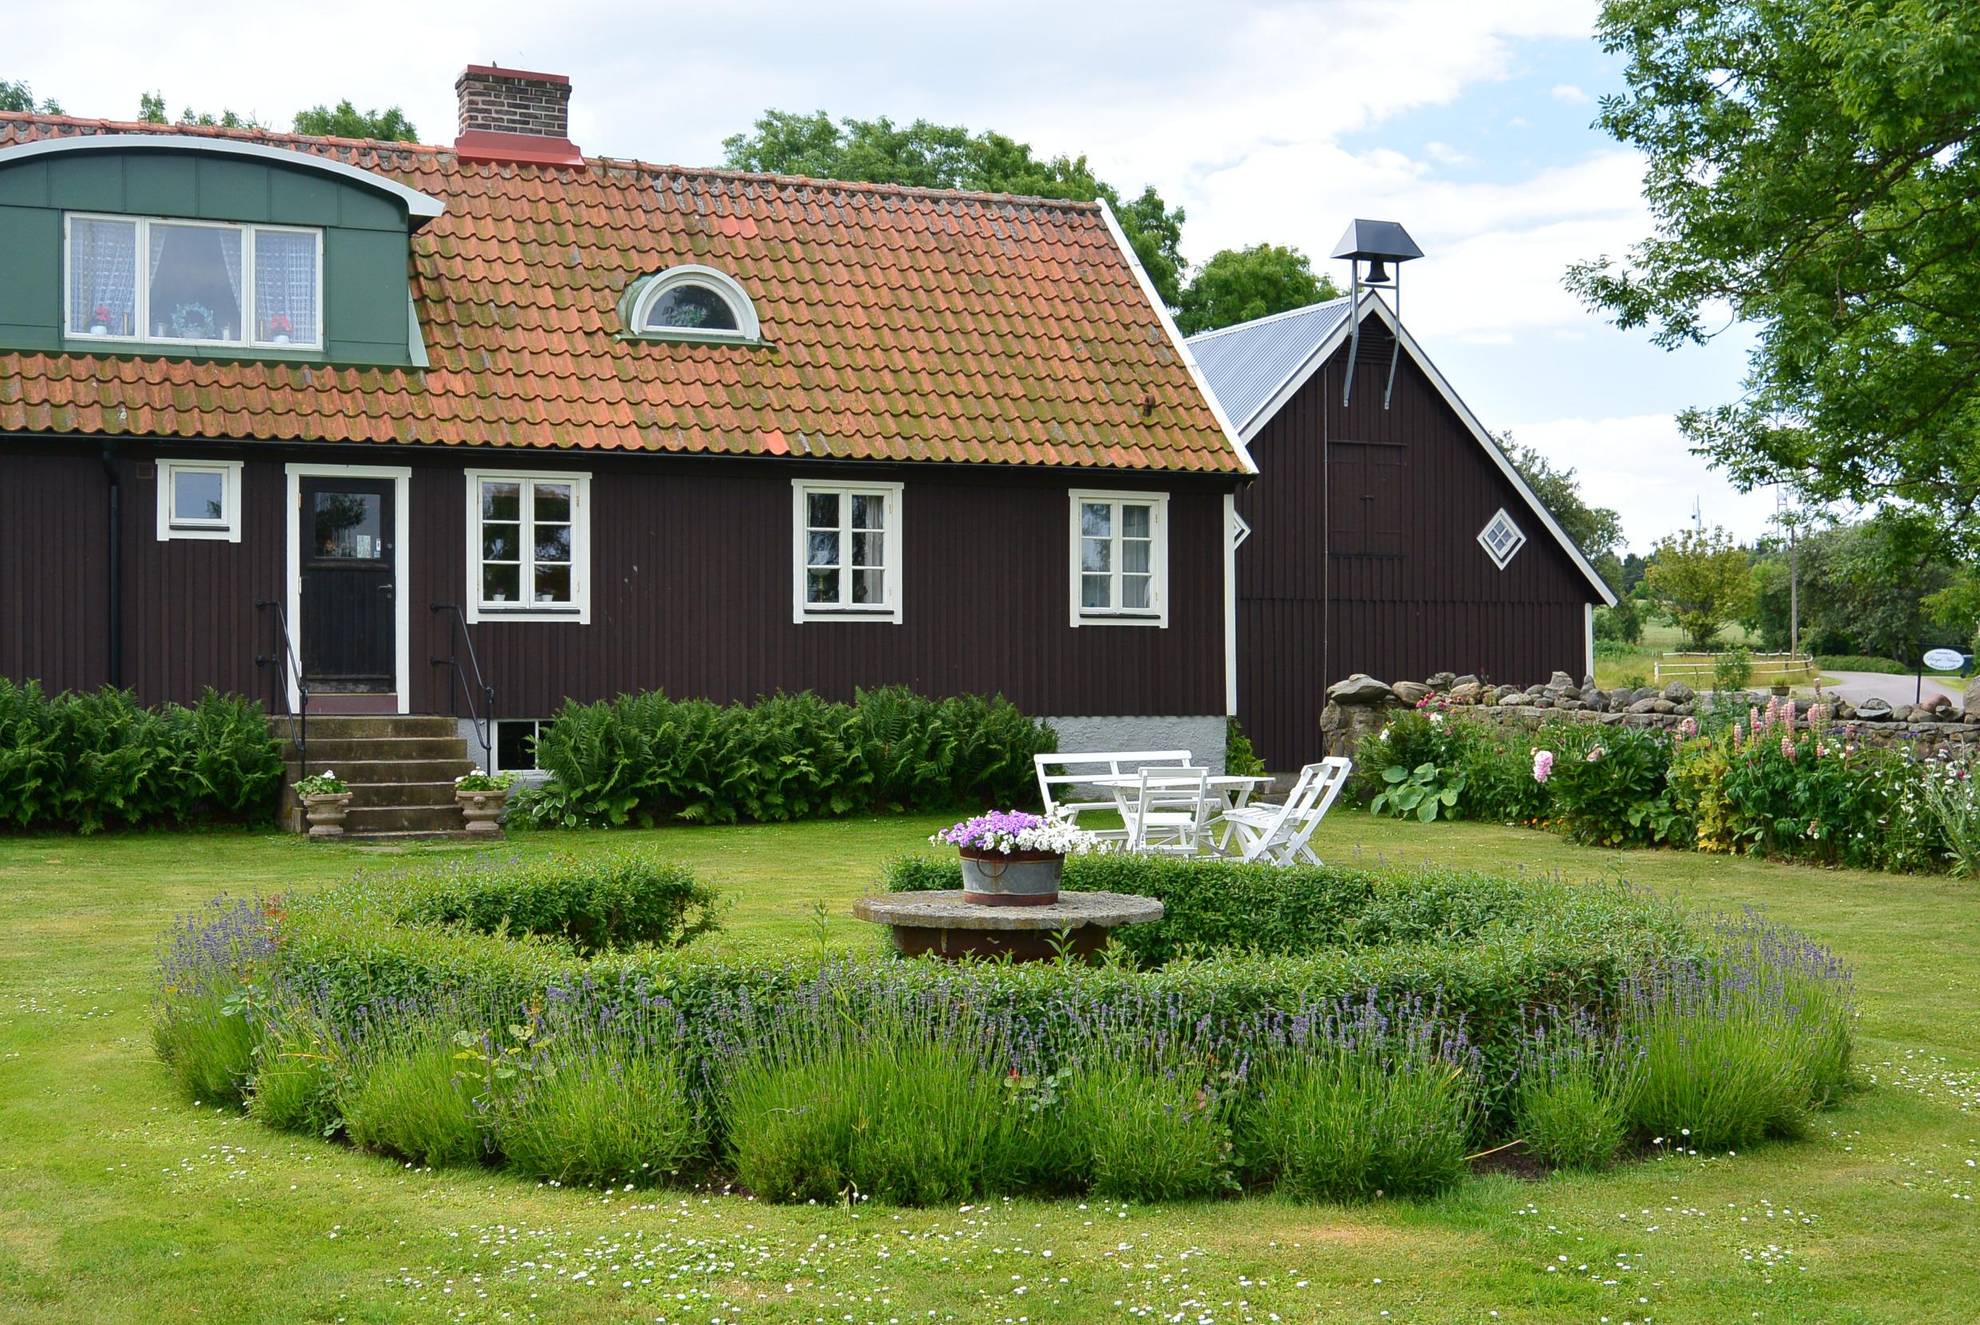 Hinter einem Garten mit Blumenhecke und Sitzecke steht ein großes rotes Haus.